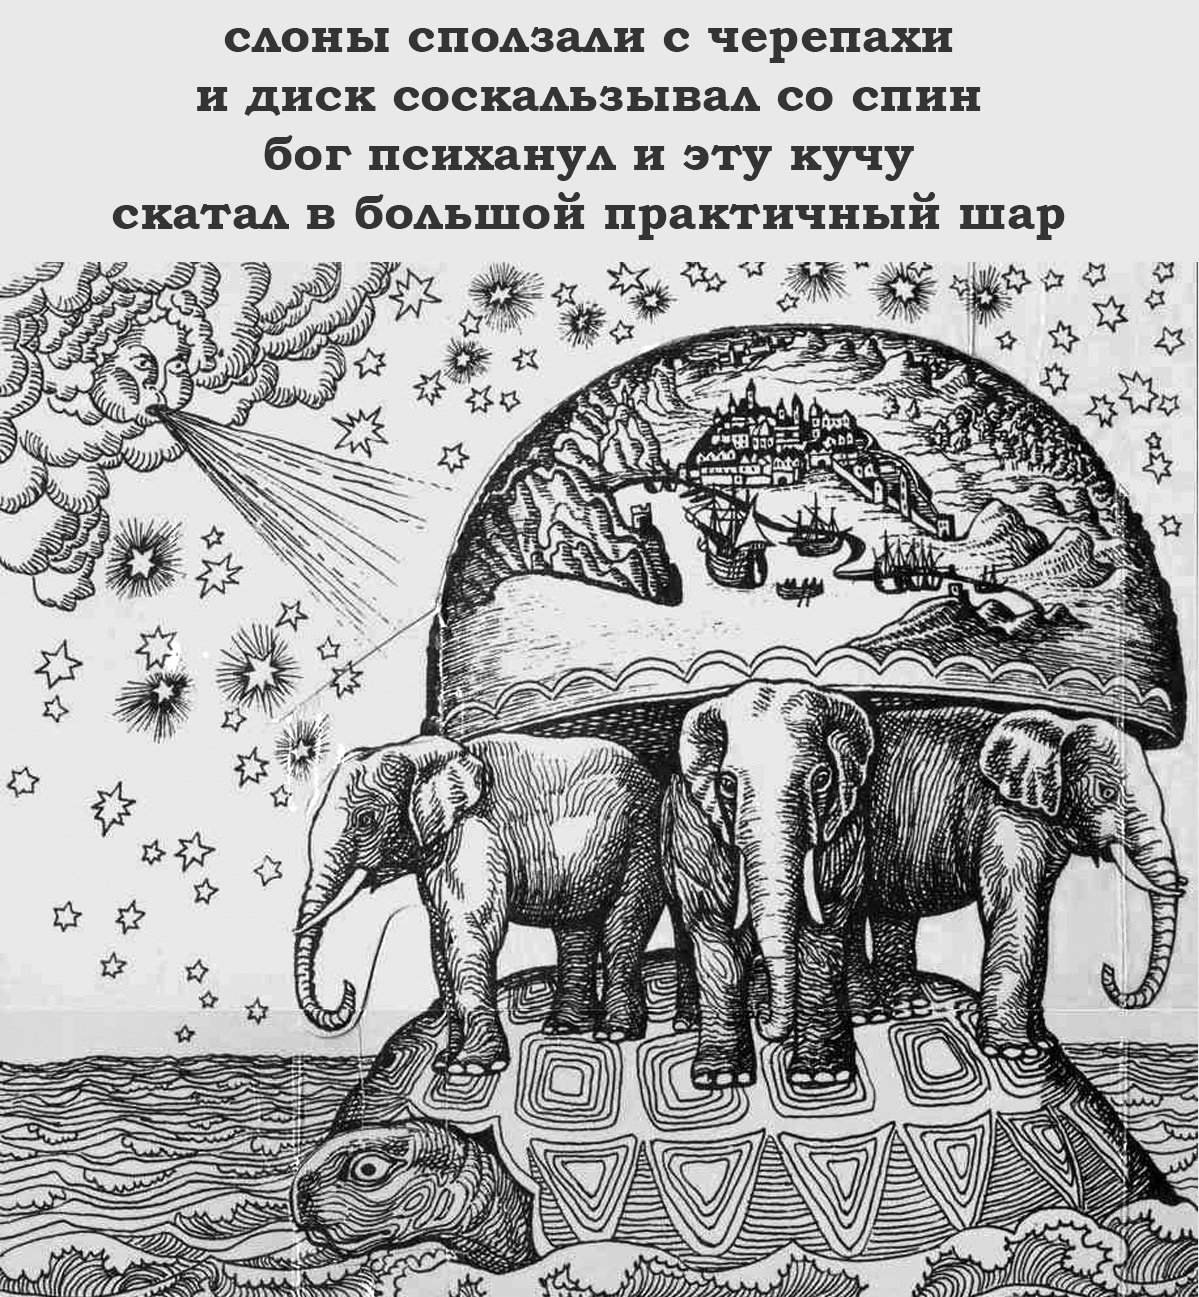 Мир на трех слонах. Черепаха три слона плоская земля. Земля на слонах. Земля на трех слонах. Плоская земля на трех слонах и черепахе.